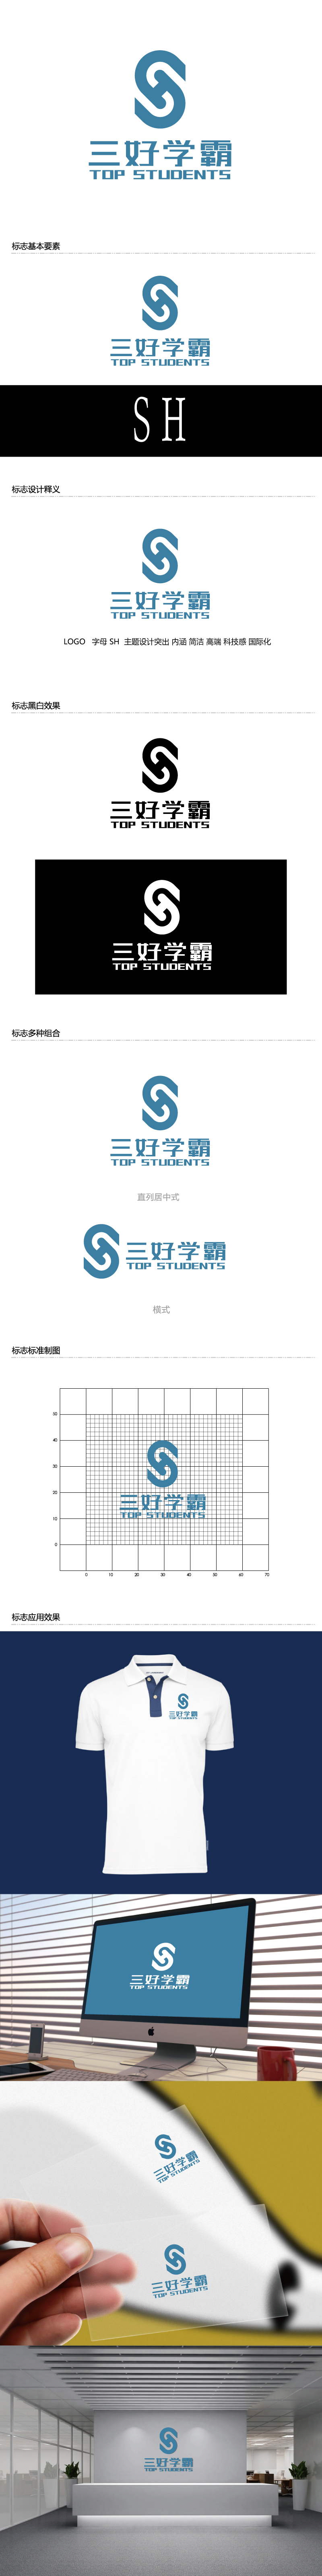 张俊的三好学霸logo设计